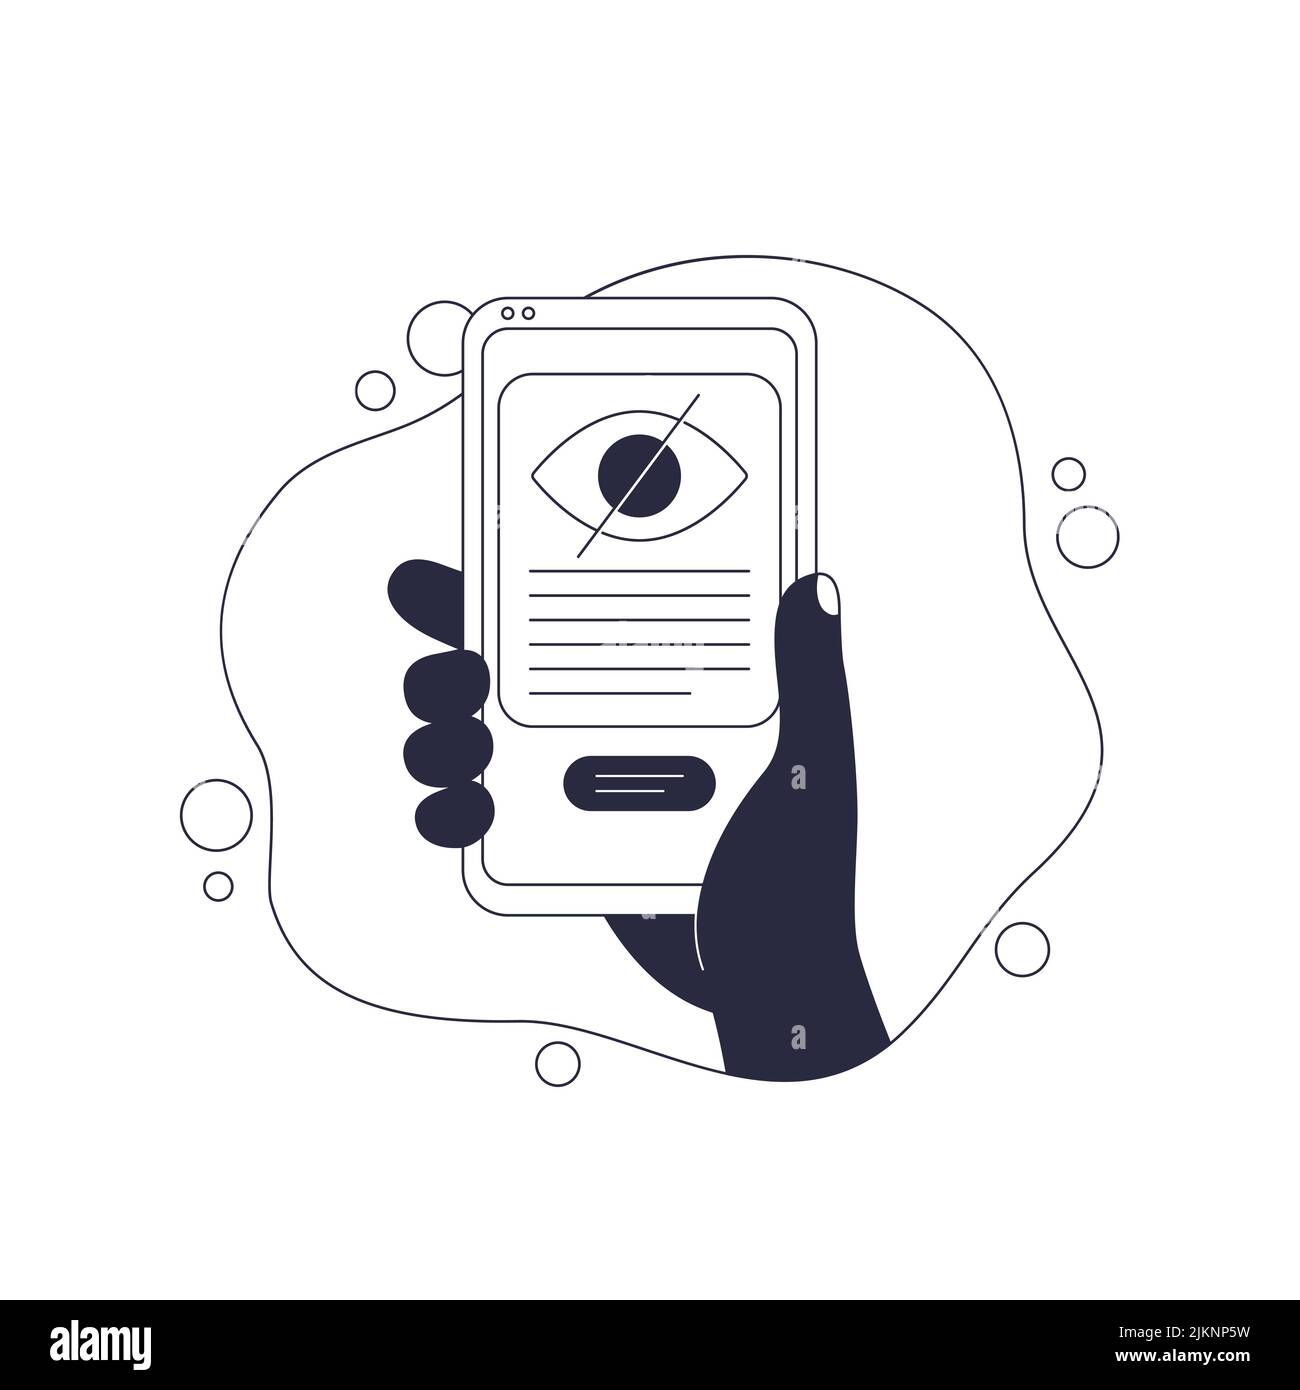 contenu caché ou invisible, téléphone en main, vecteur Illustration de Vecteur